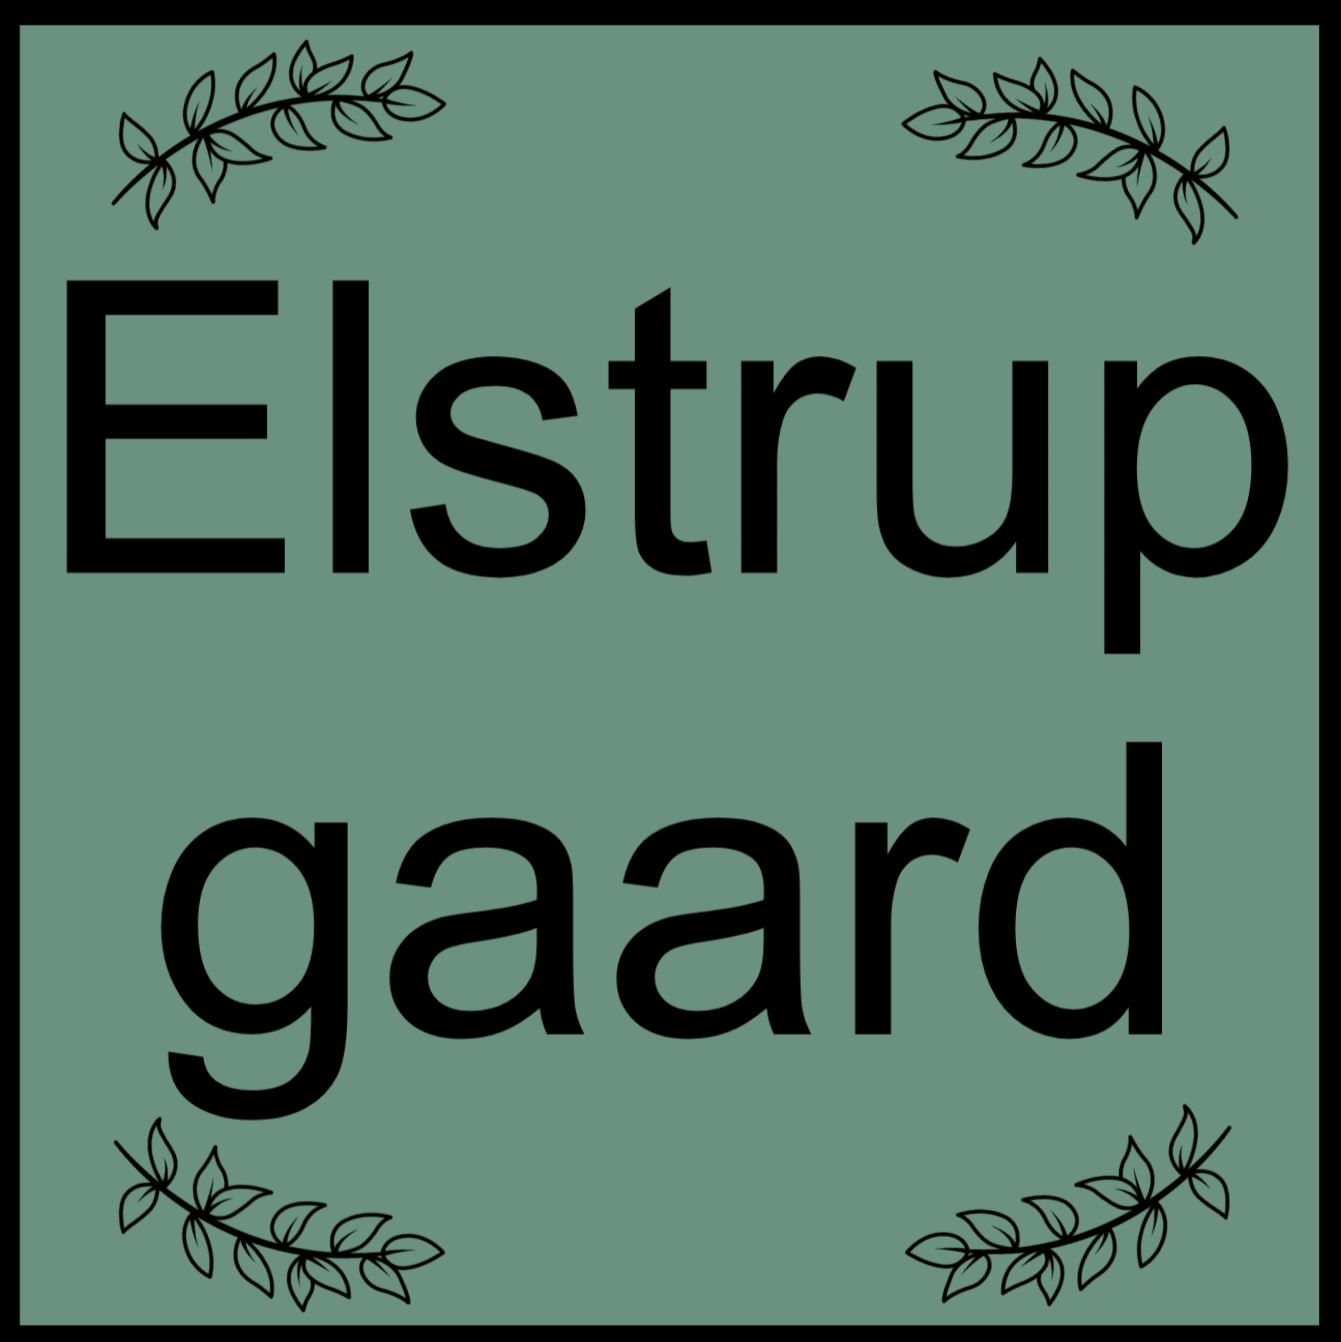 Elstrupgaard